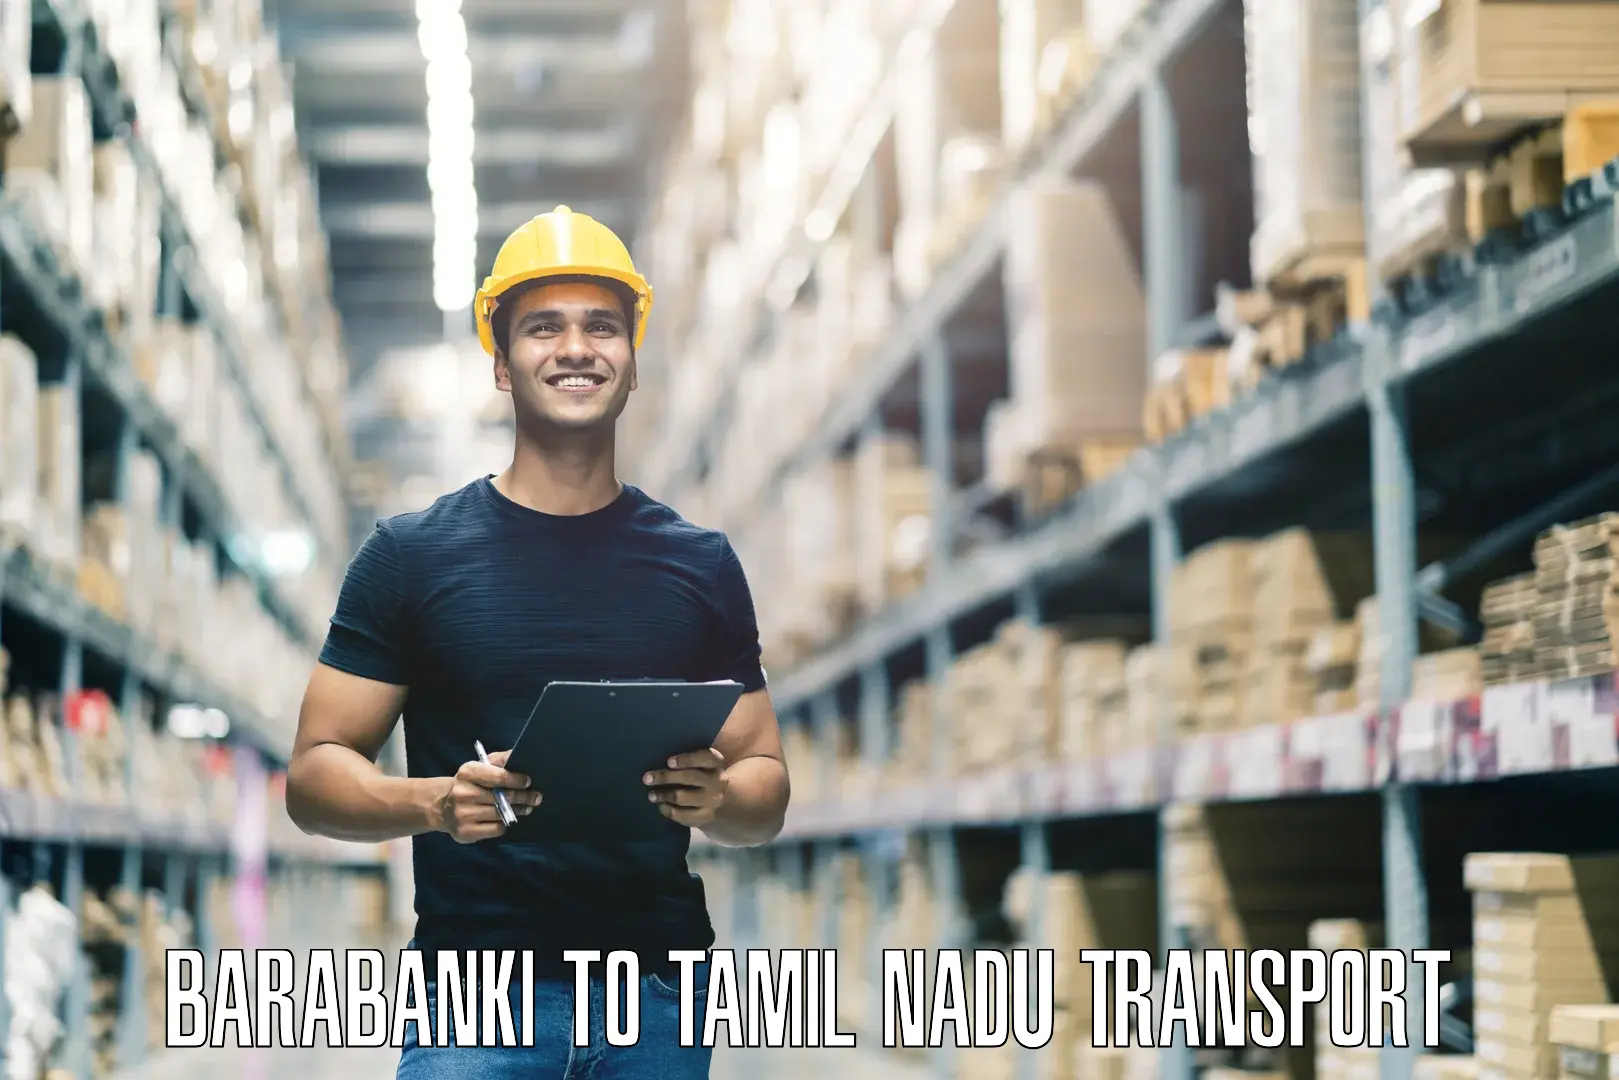 Nearest transport service Barabanki to Tiruvannamalai